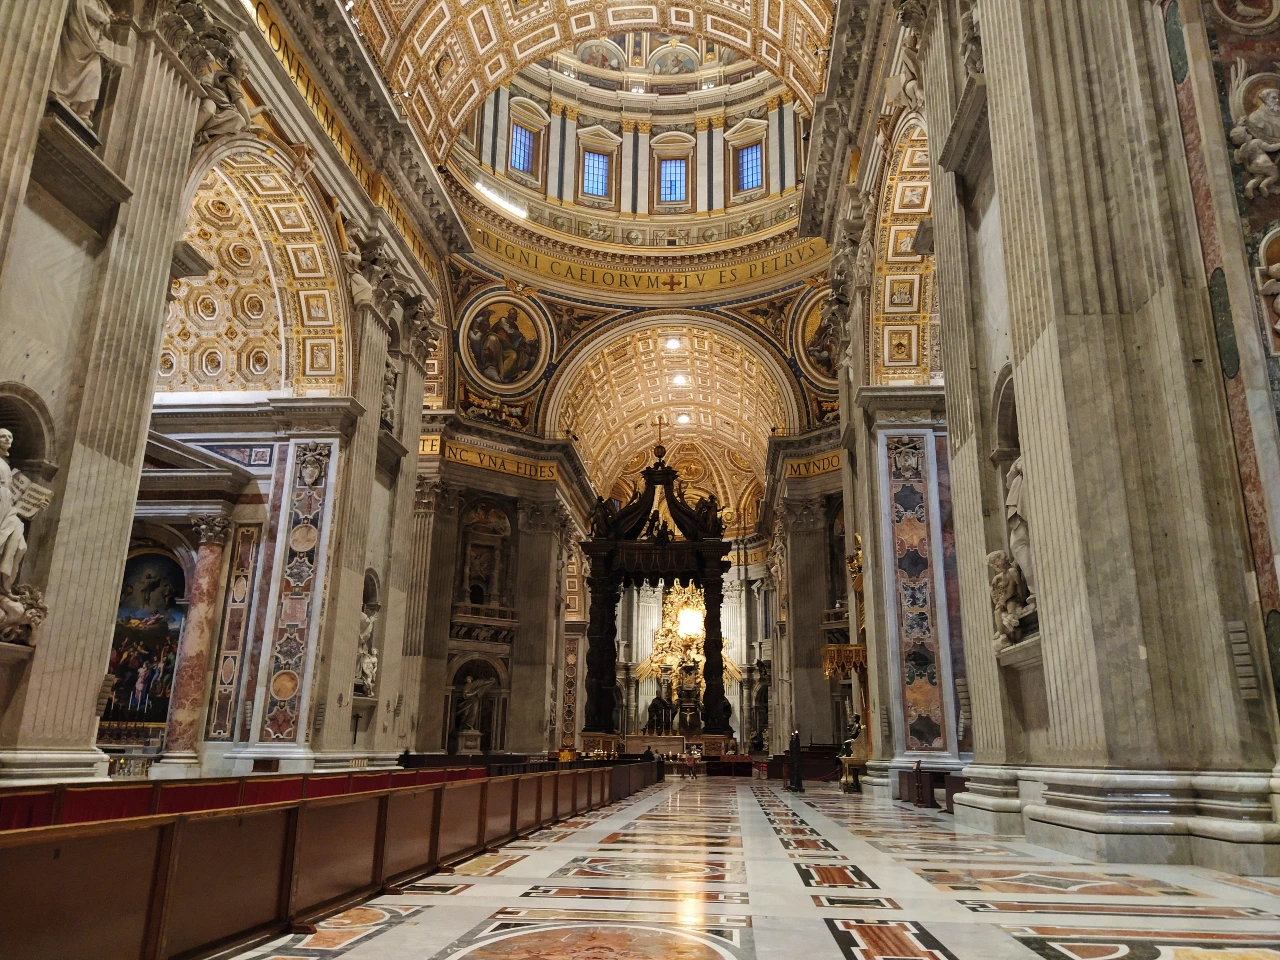 Que ver en el Vaticano